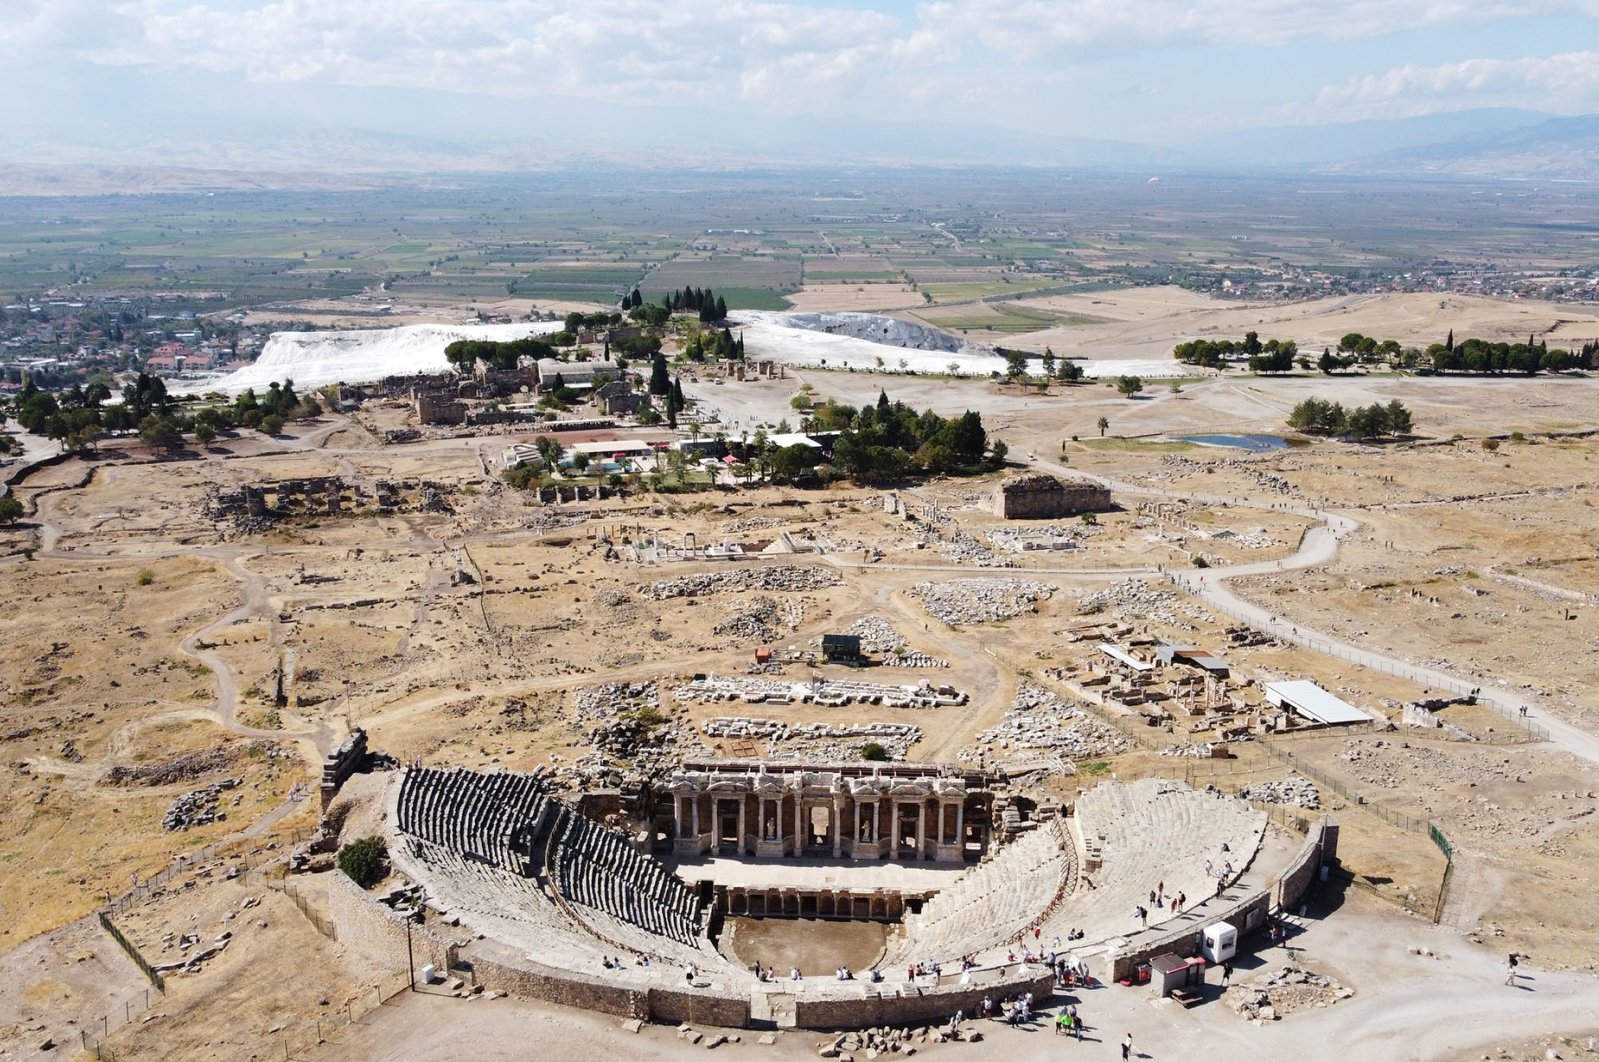 Rumah Helenistik Kuno Ditemukan di Hierapolis Turki